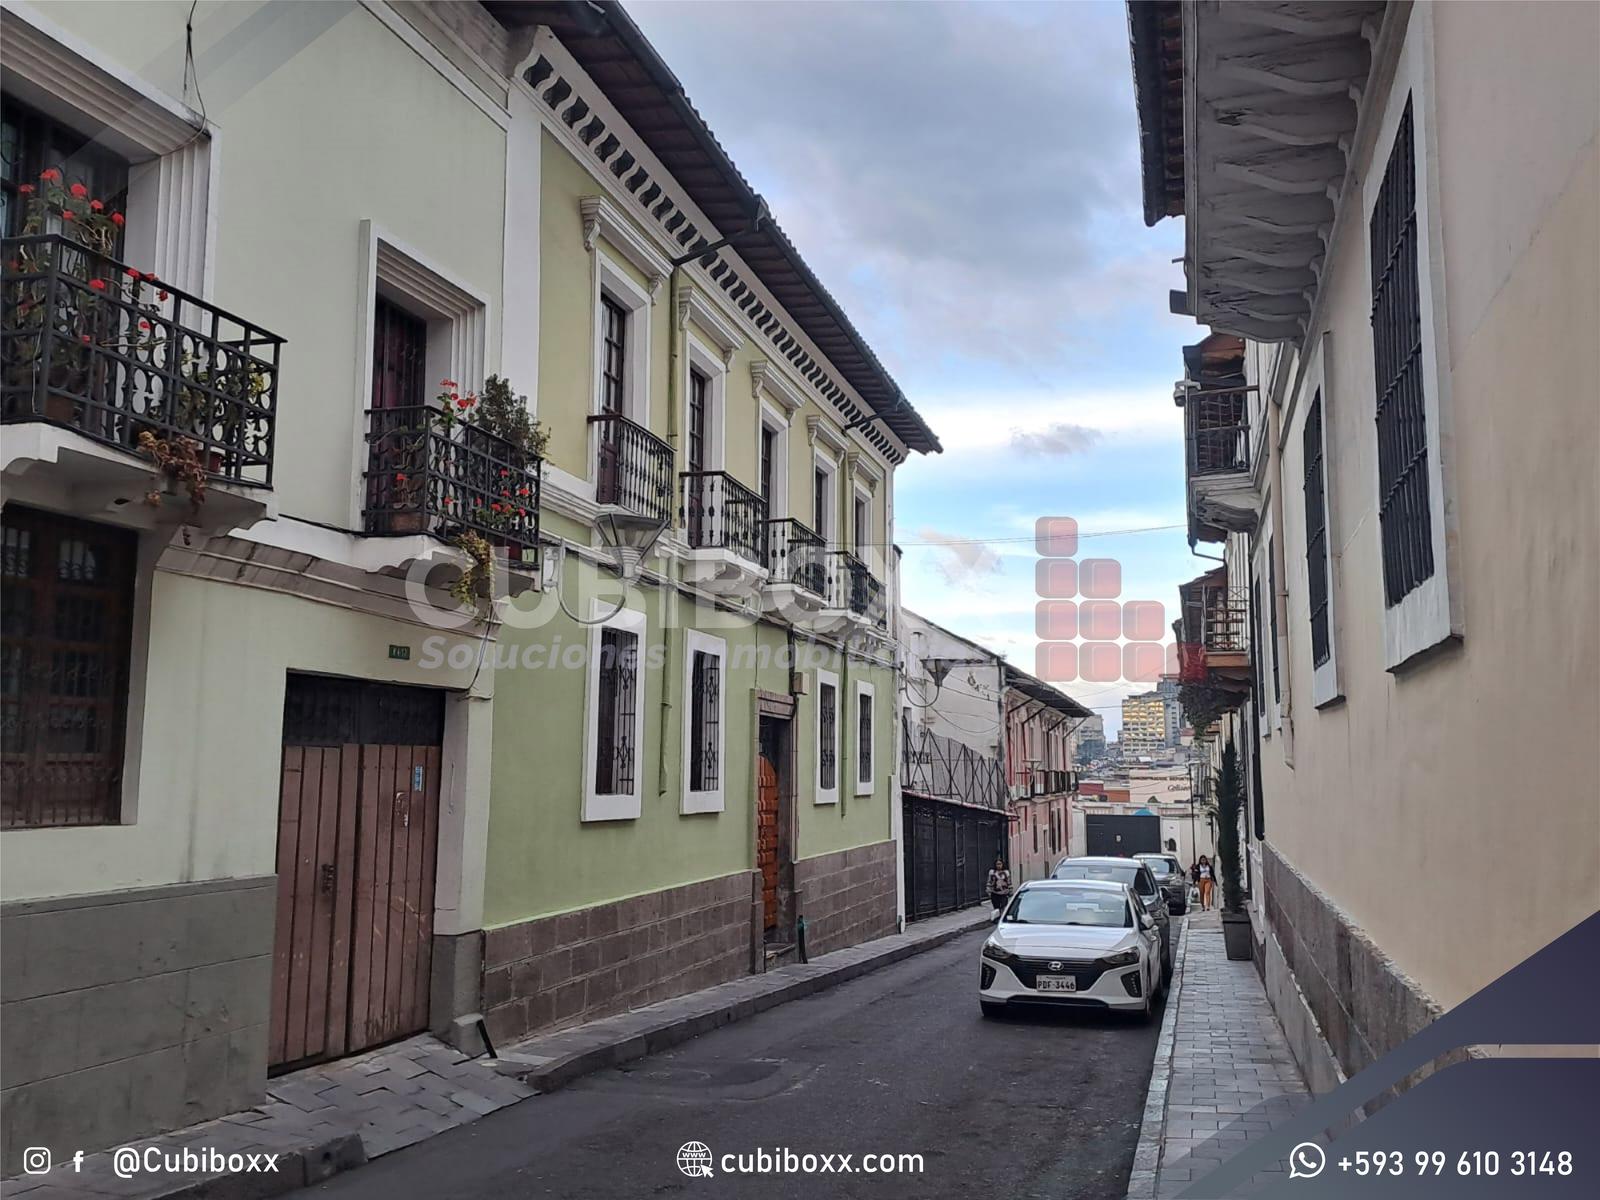 Excelente oportunidad de inversión-Casa patrimoniada rentera en el centro de Quito sector Bilbao y Junin